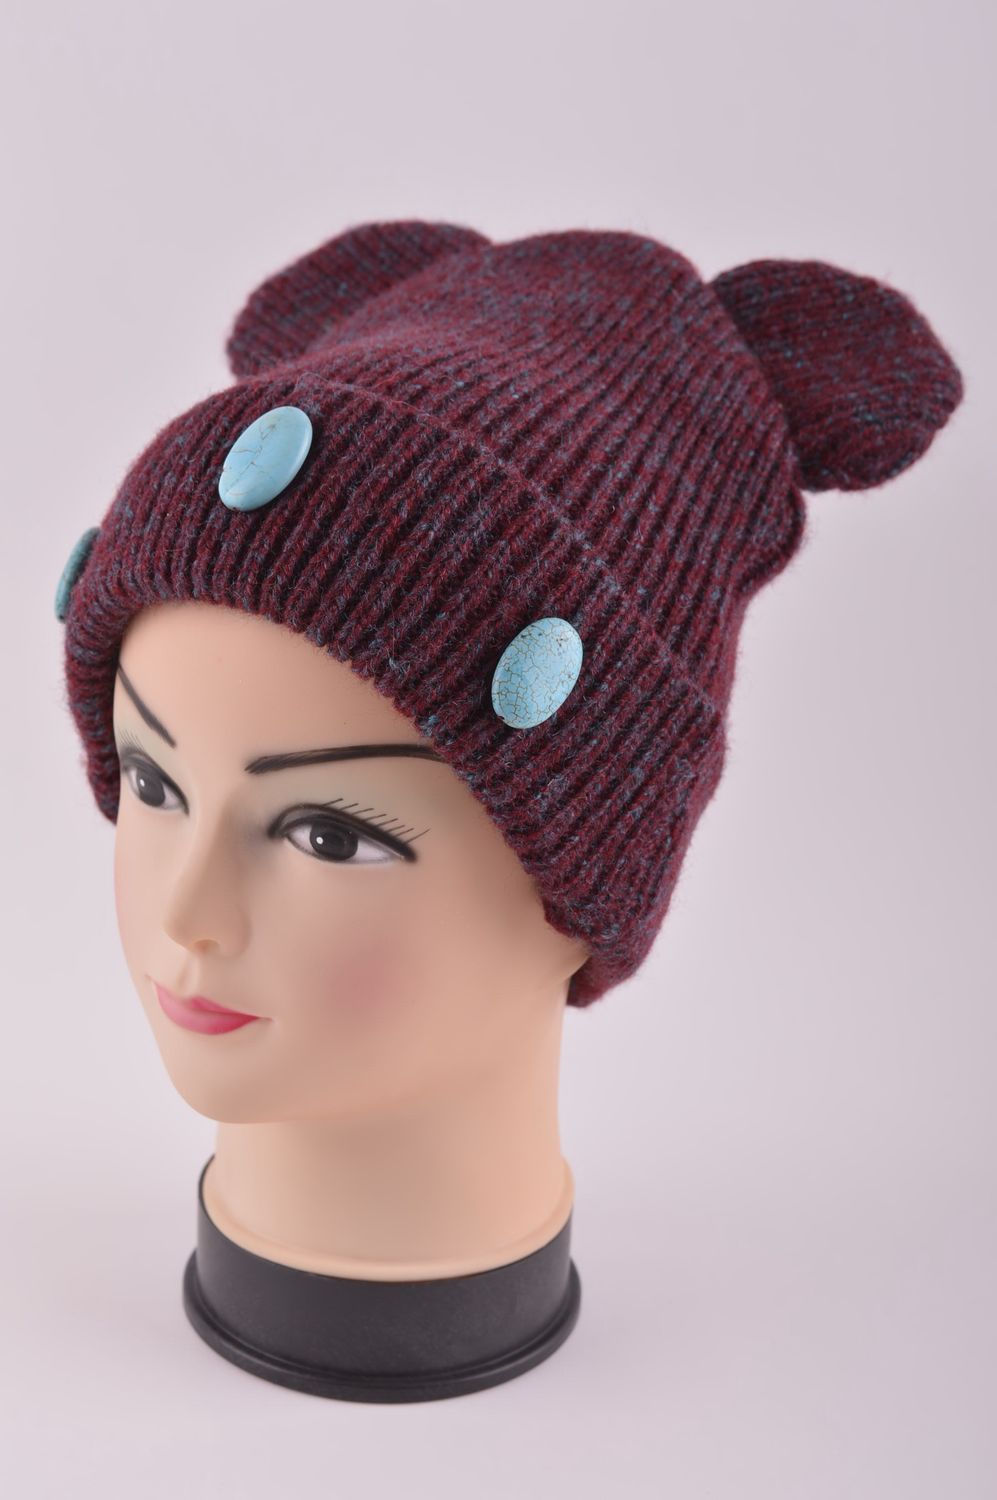 Hand-knitted woolen winter hat handmade hat winter accessories warm hat photo 2